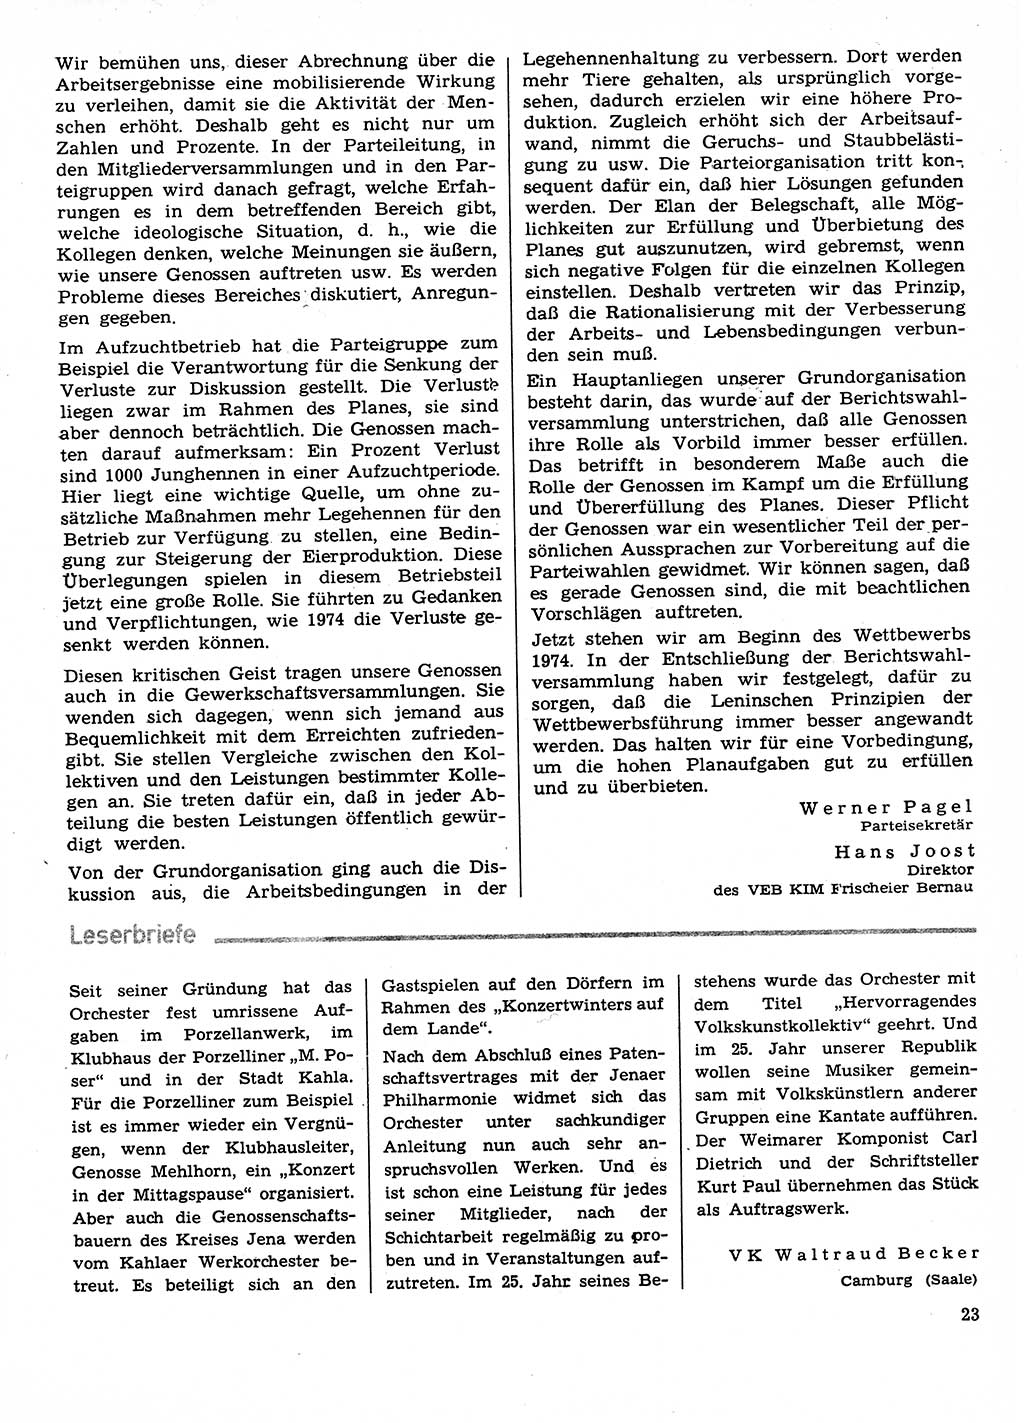 Neuer Weg (NW), Organ des Zentralkomitees (ZK) der SED (Sozialistische Einheitspartei Deutschlands) für Fragen des Parteilebens, 29. Jahrgang [Deutsche Demokratische Republik (DDR)] 1974, Seite 23 (NW ZK SED DDR 1974, S. 23)